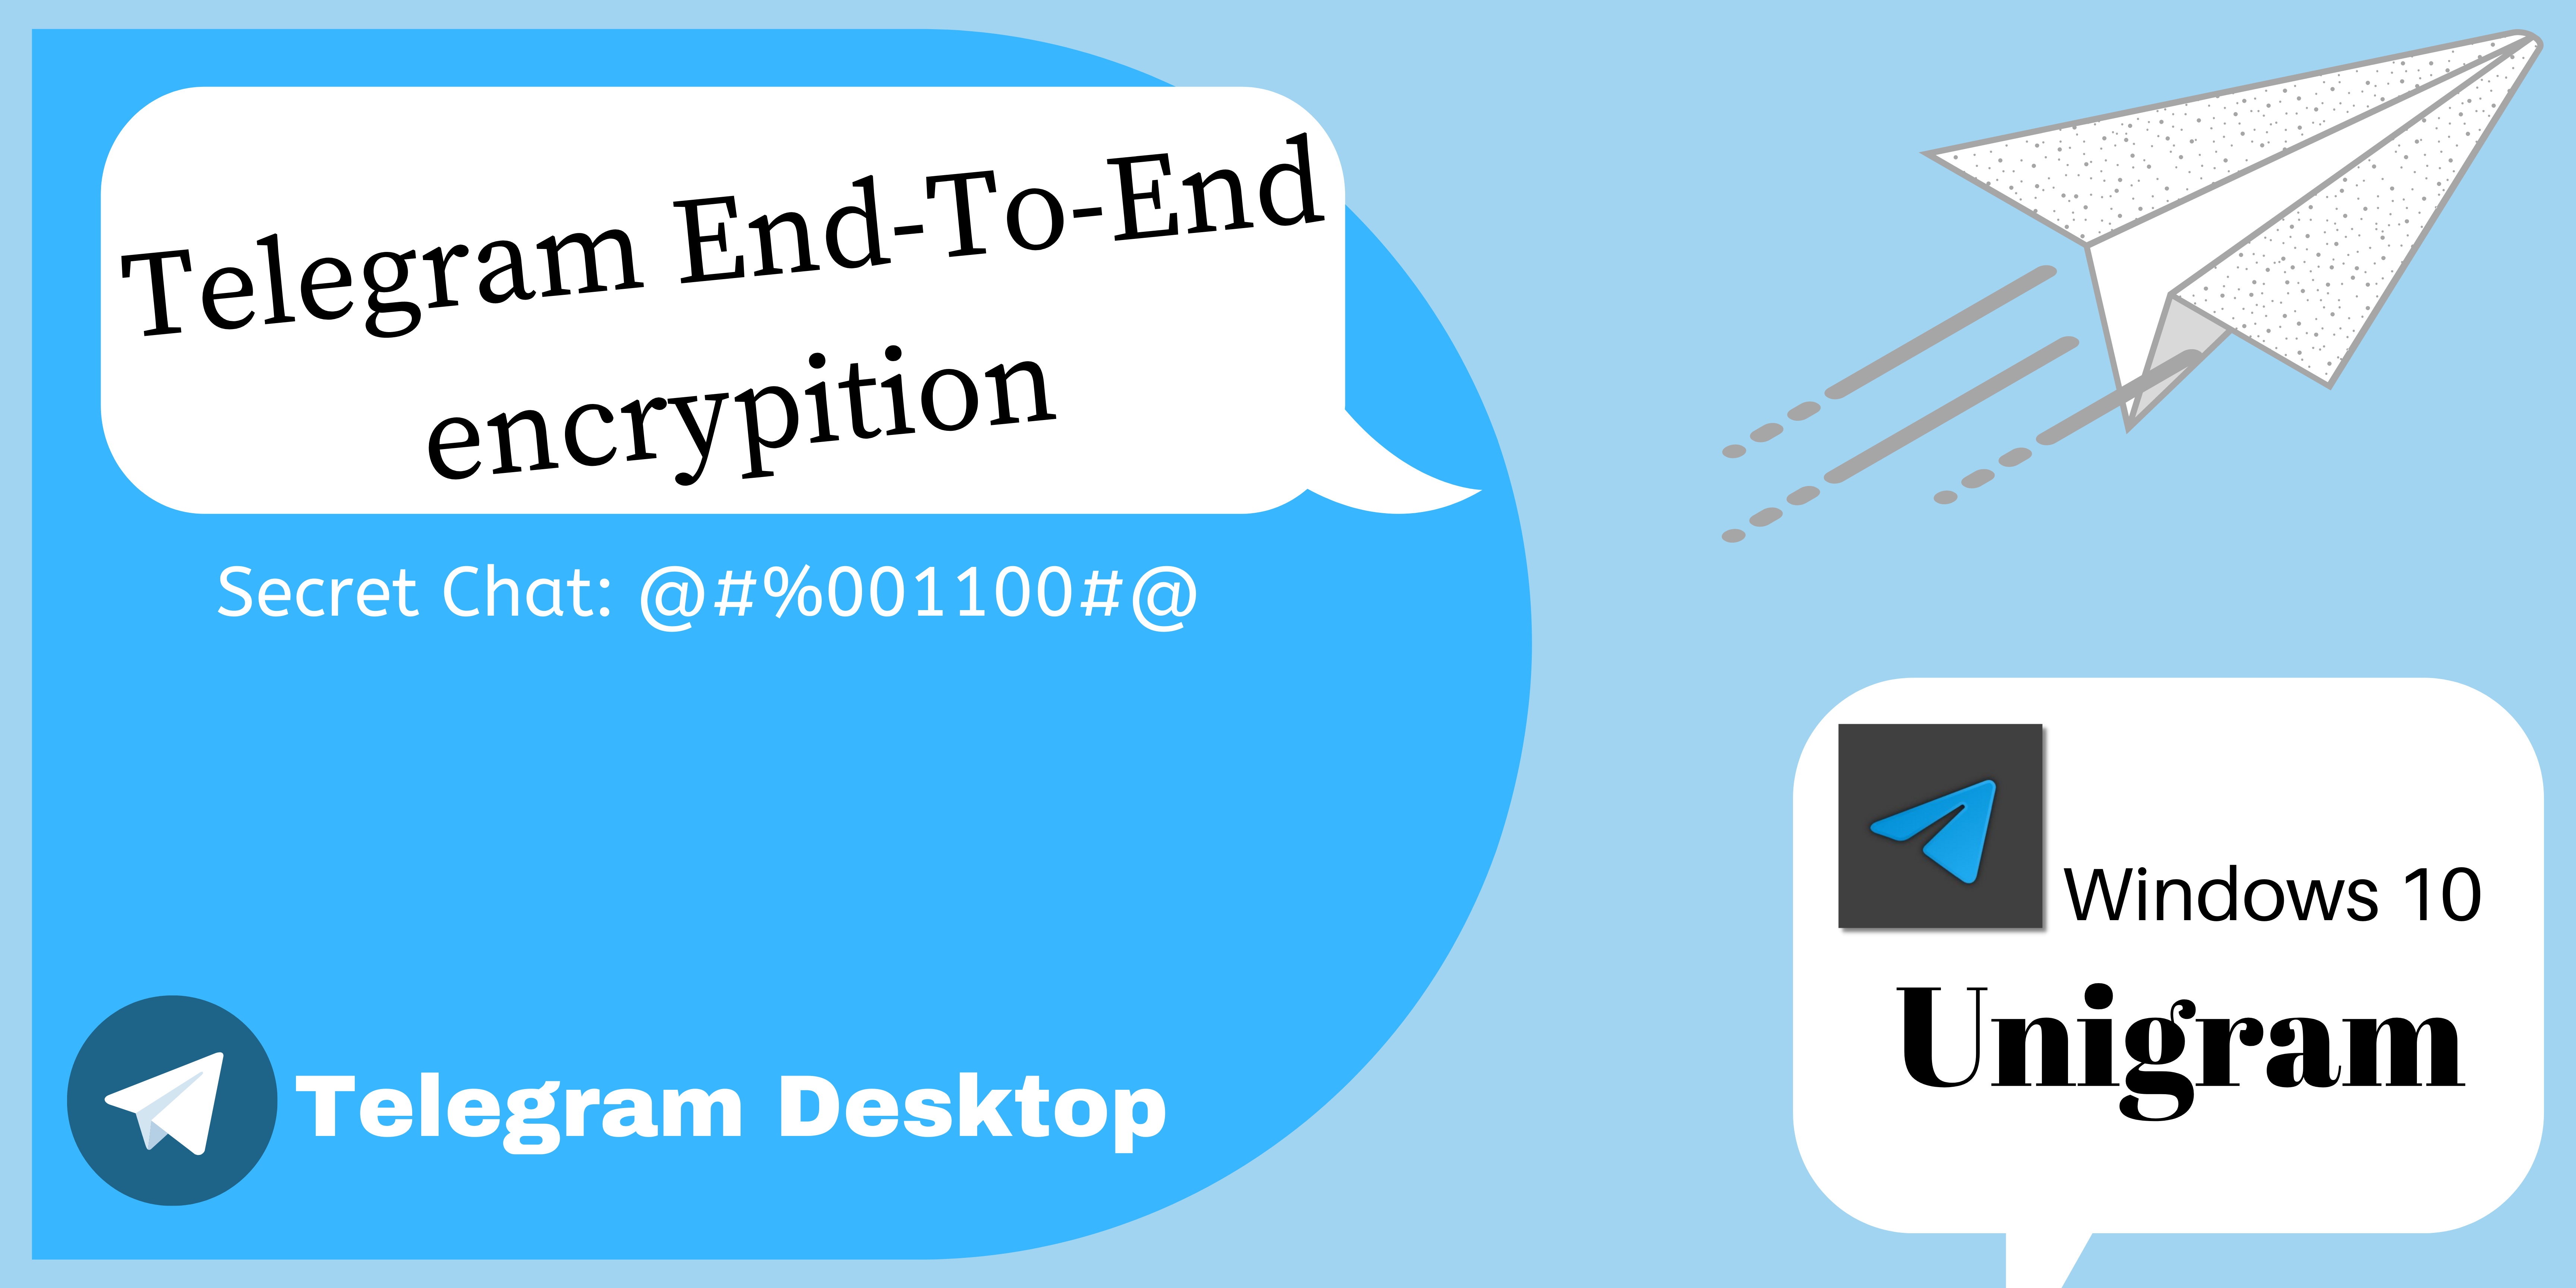 Telegram End-To-End encryption